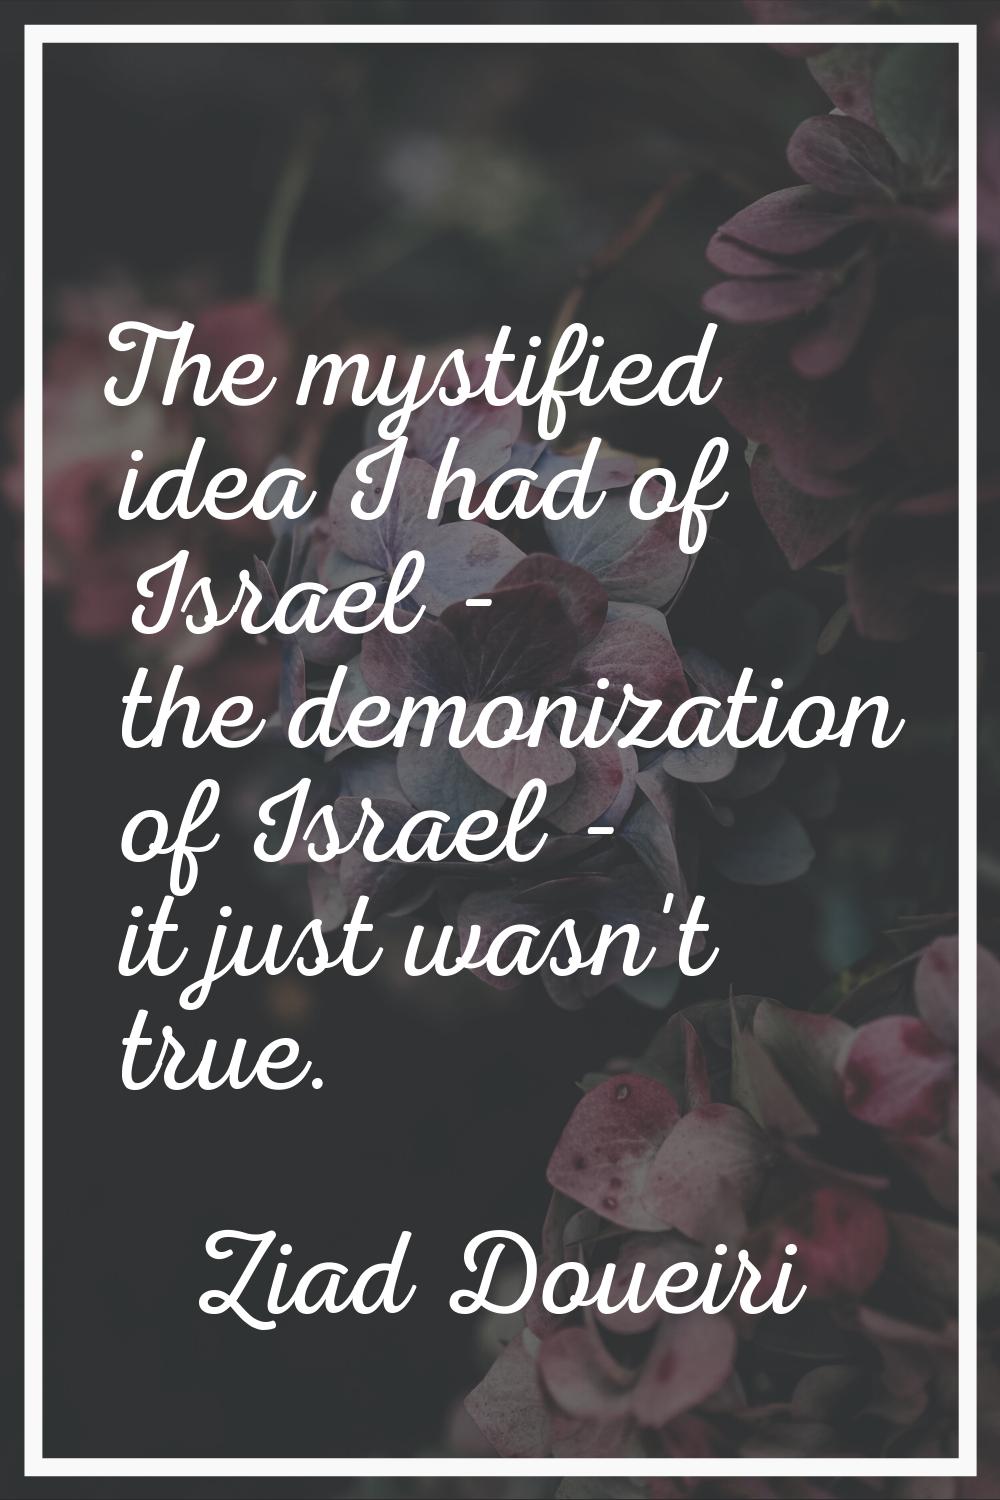 The mystified idea I had of Israel - the demonization of Israel - it just wasn't true.